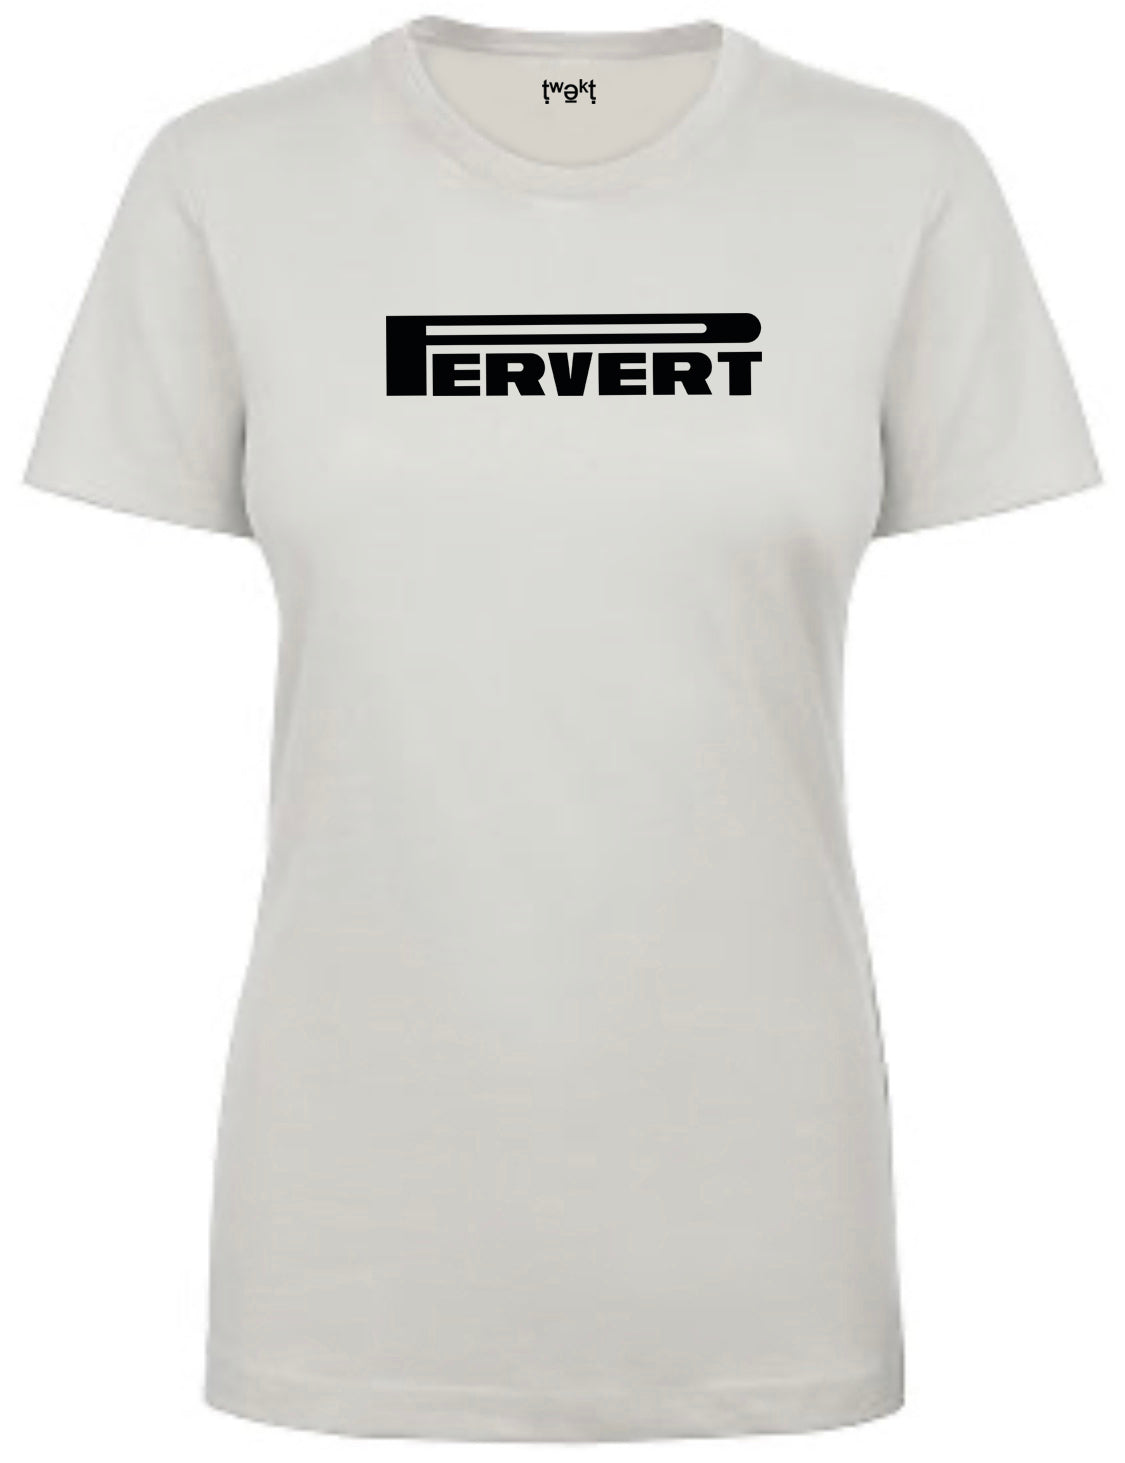 Pervert Women T-shirt